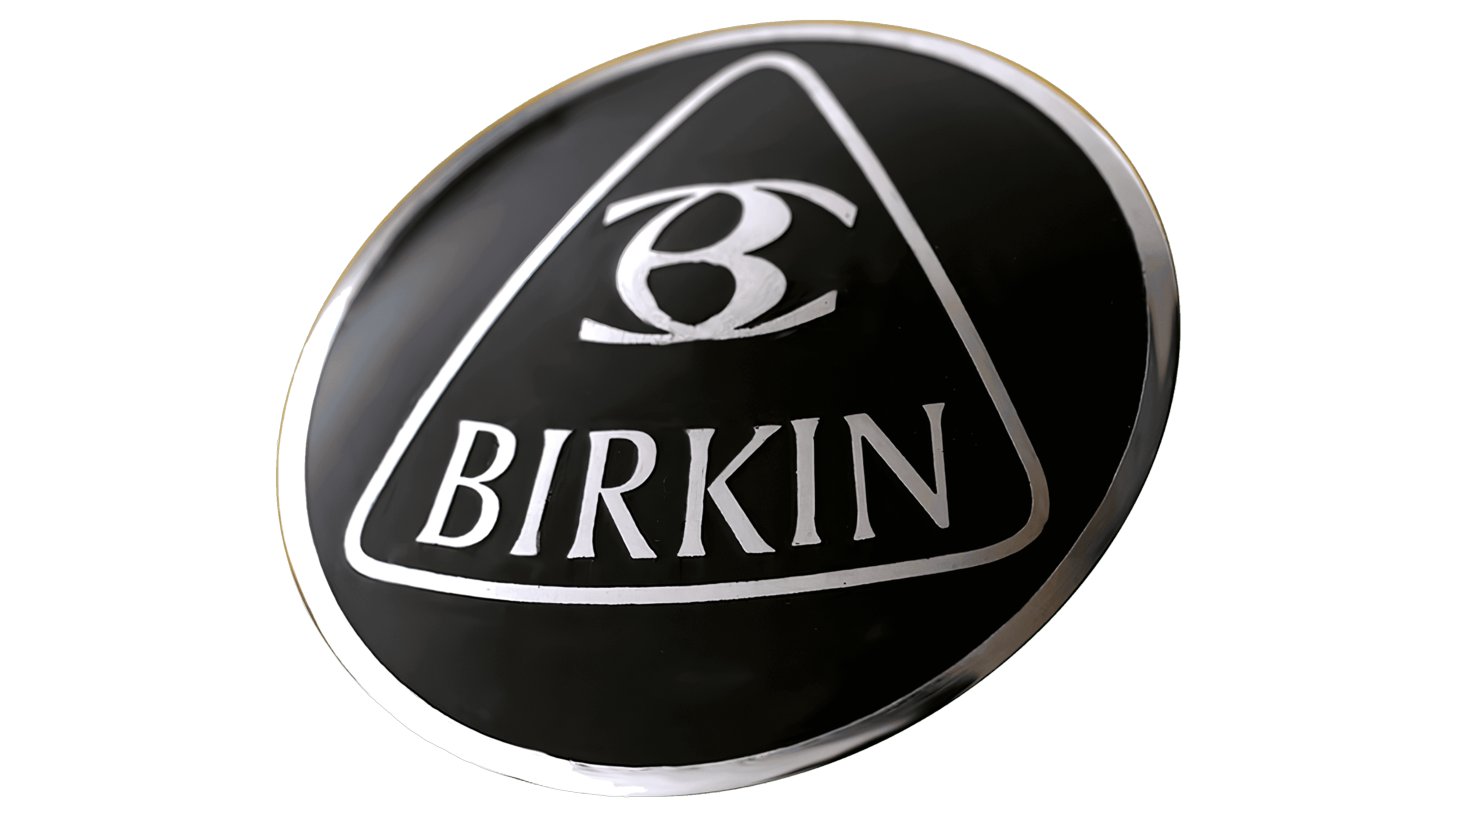 Birkin sign